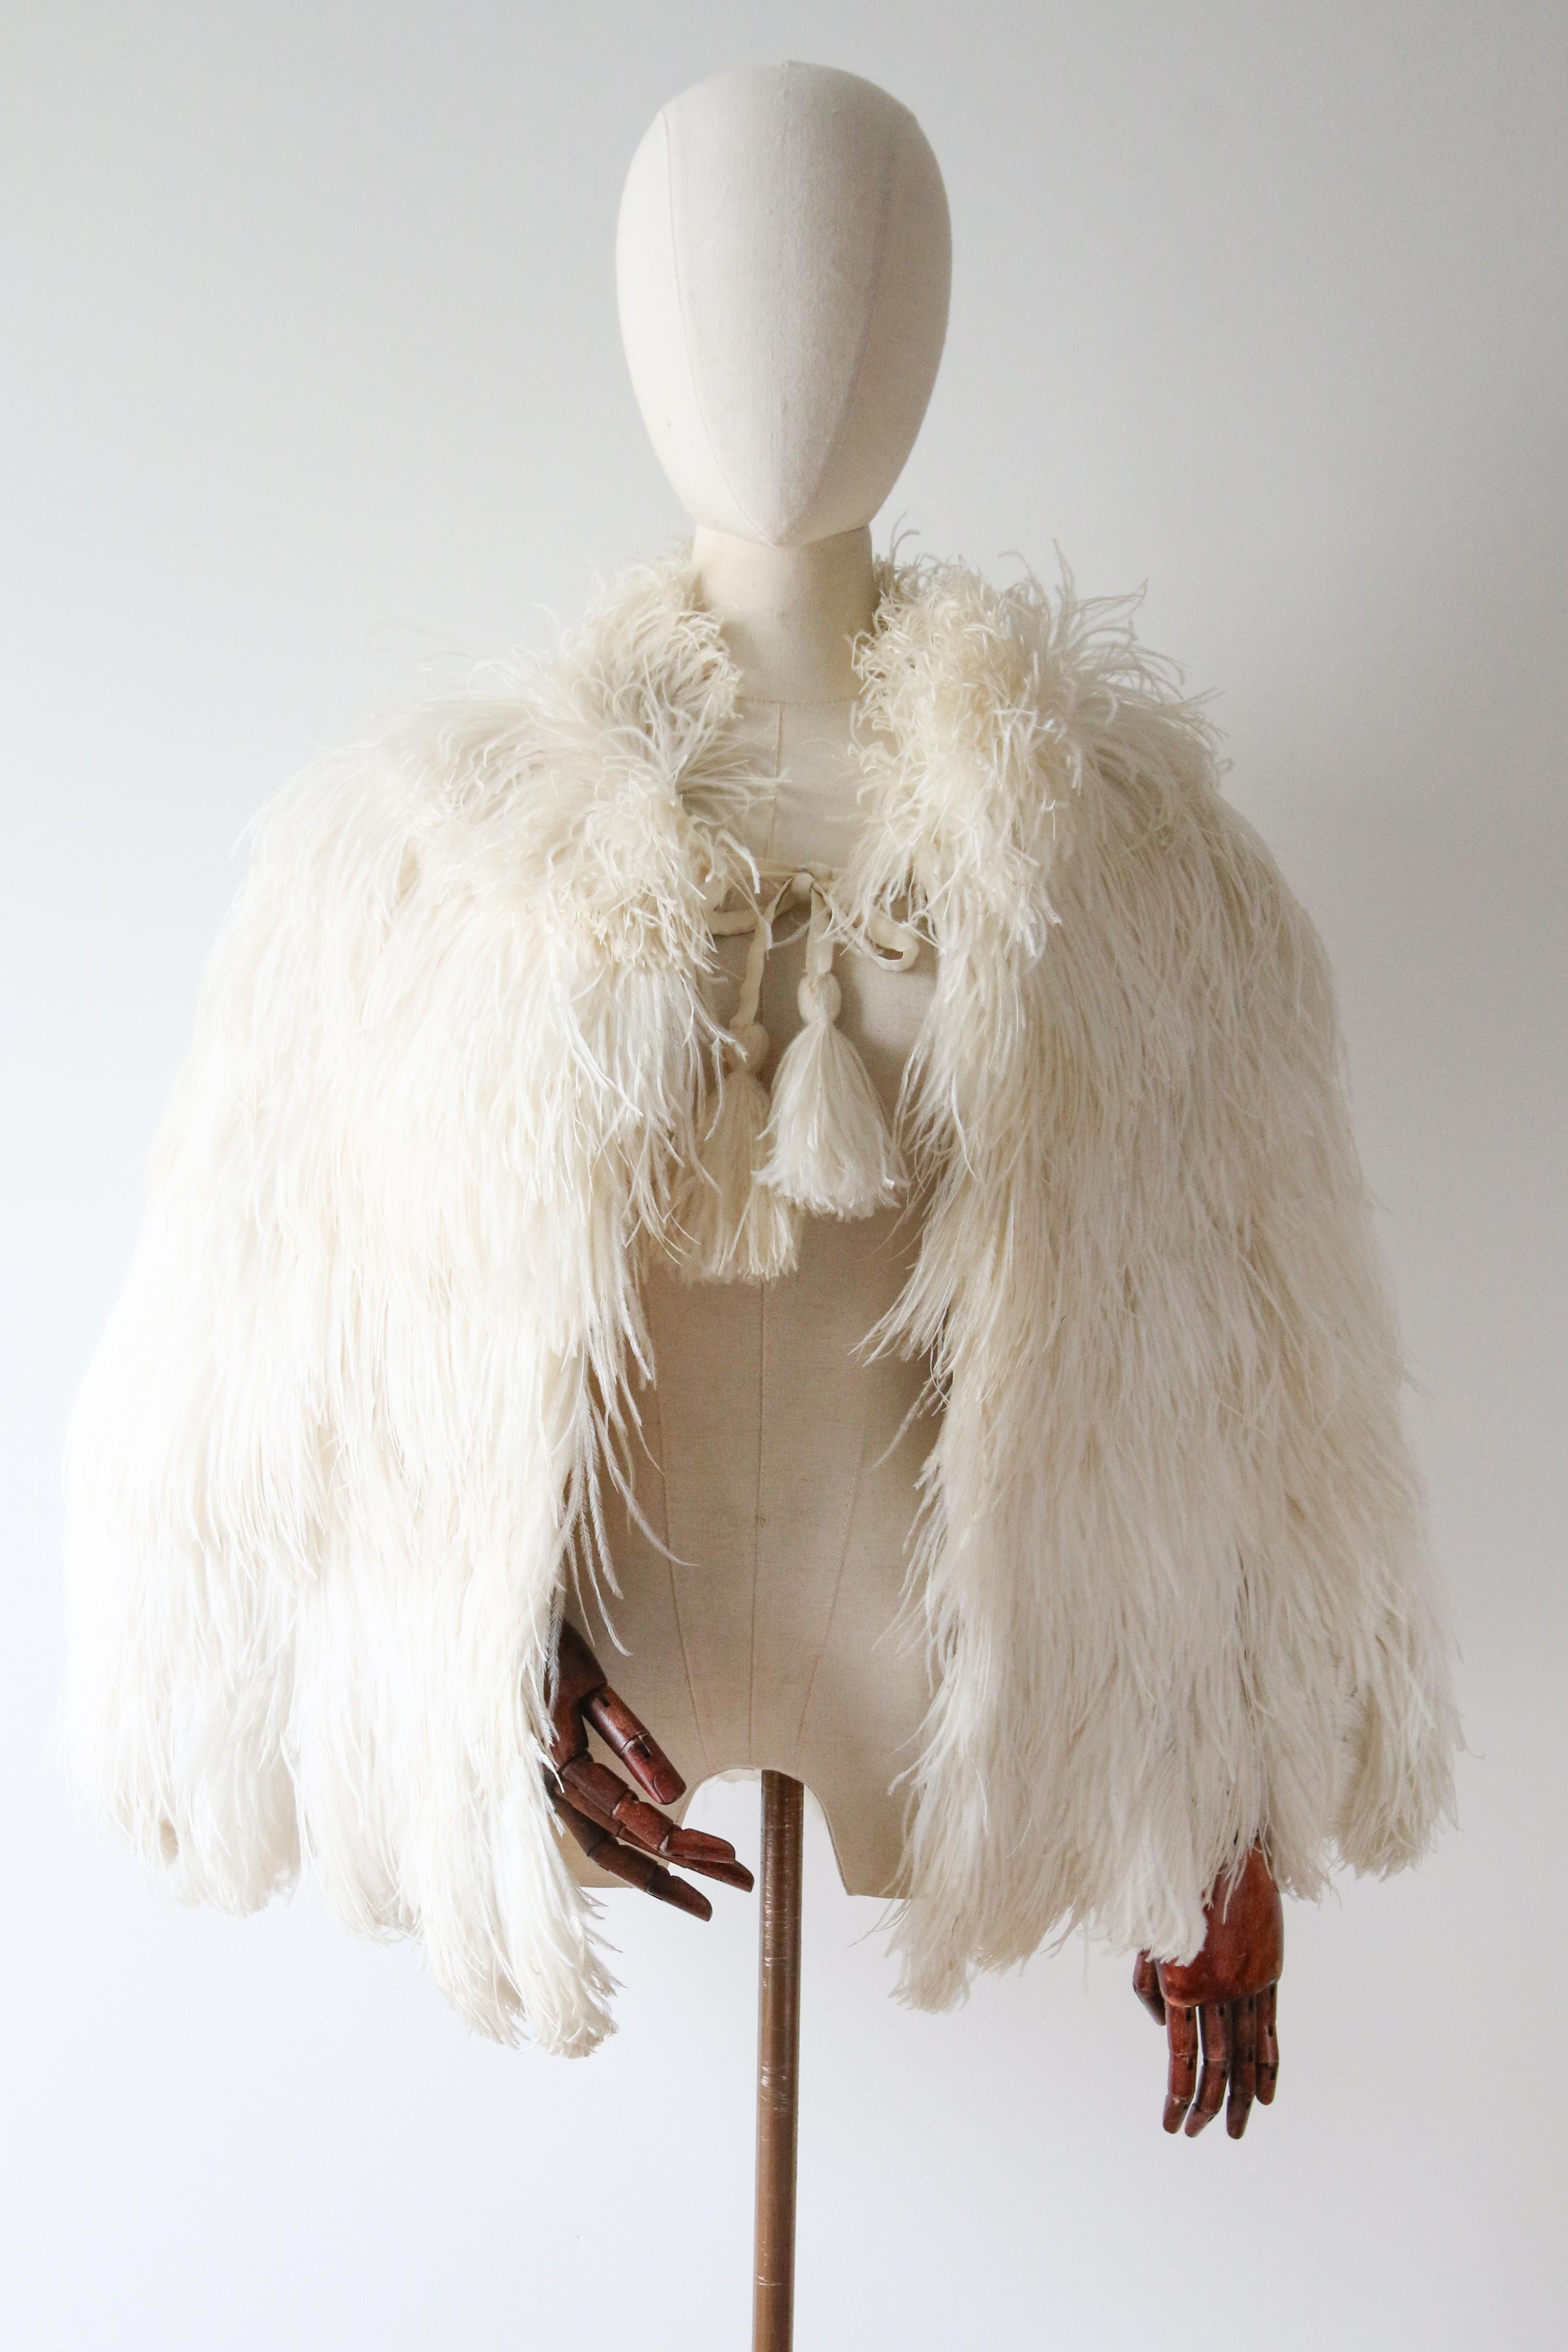 Cette rare et opulente cape en plumes d'autruche des années 1930, de couleur ivoire, est une pièce à voir.

Le plumage étonnant des plumes d'autruche ivoire enveloppe le décolleté et les épaules d'un plumage moelleux. Elle est reliée sur le devant